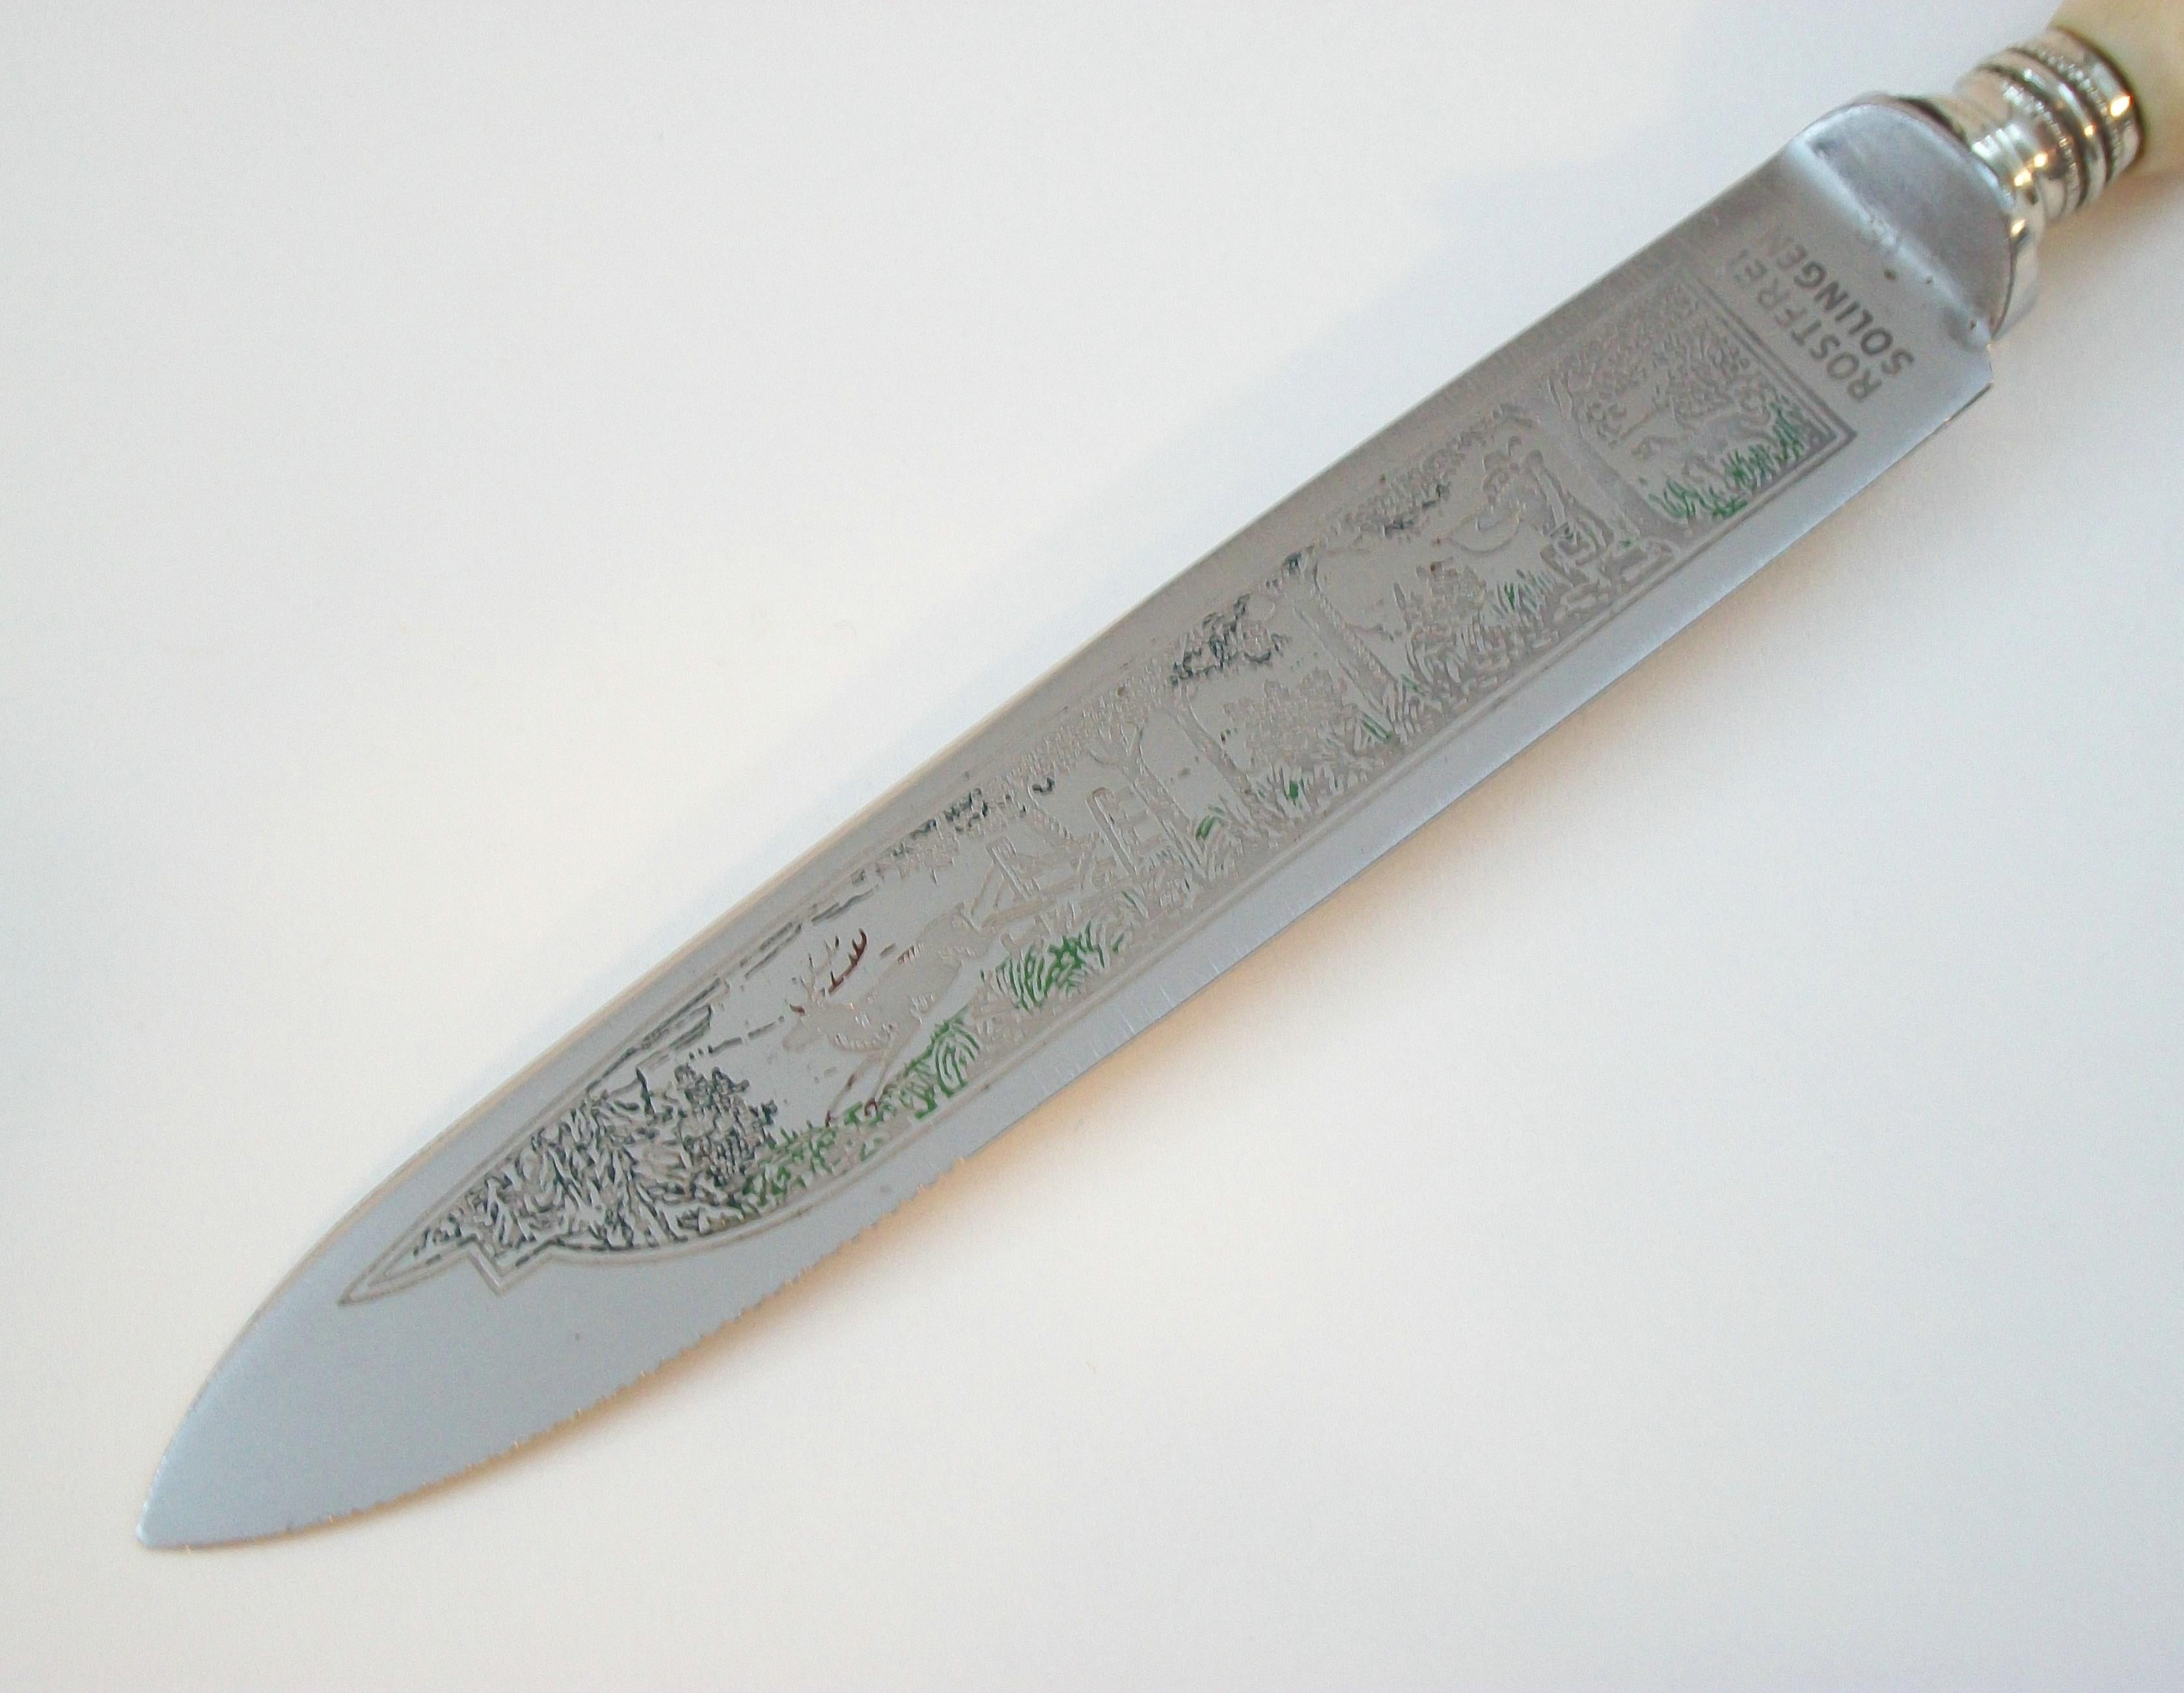 Hand-Crafted SOLINGEN - Antler Handled Steak Knife - Engraved Blade - Germany - Circa 1950's